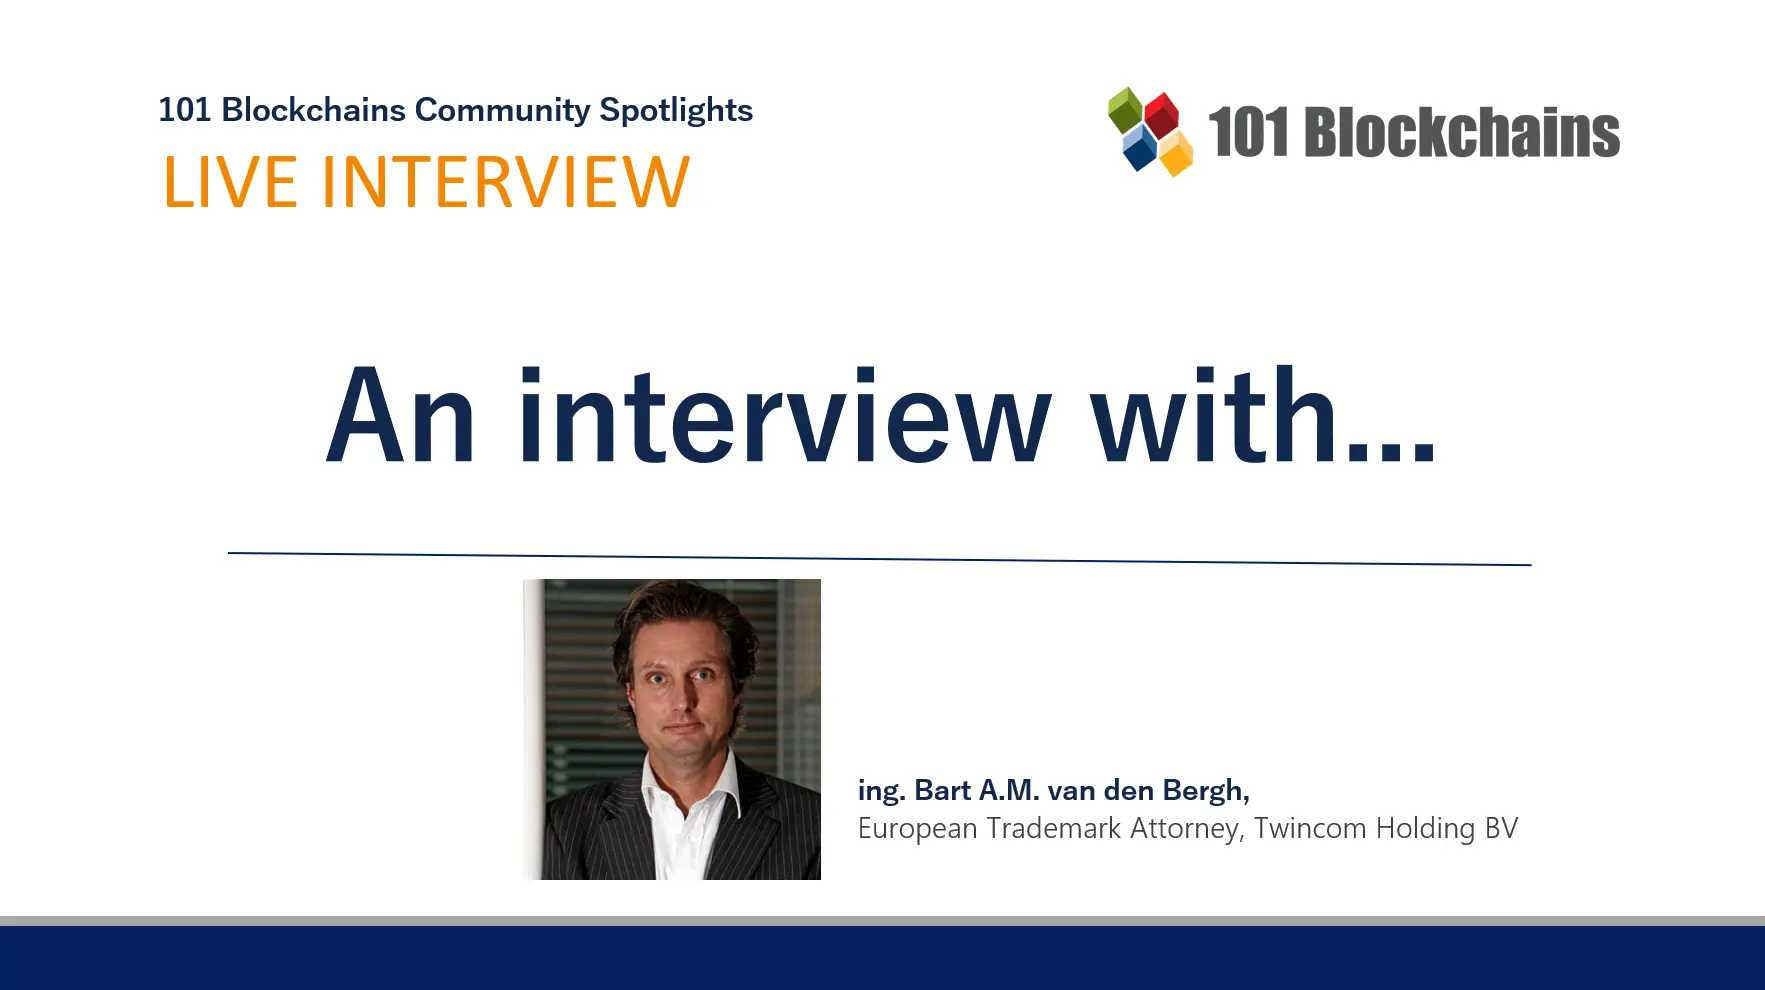 Community Spotlight: Bart van den Bergh, European Trademark Attorney, Twincom Holding BV